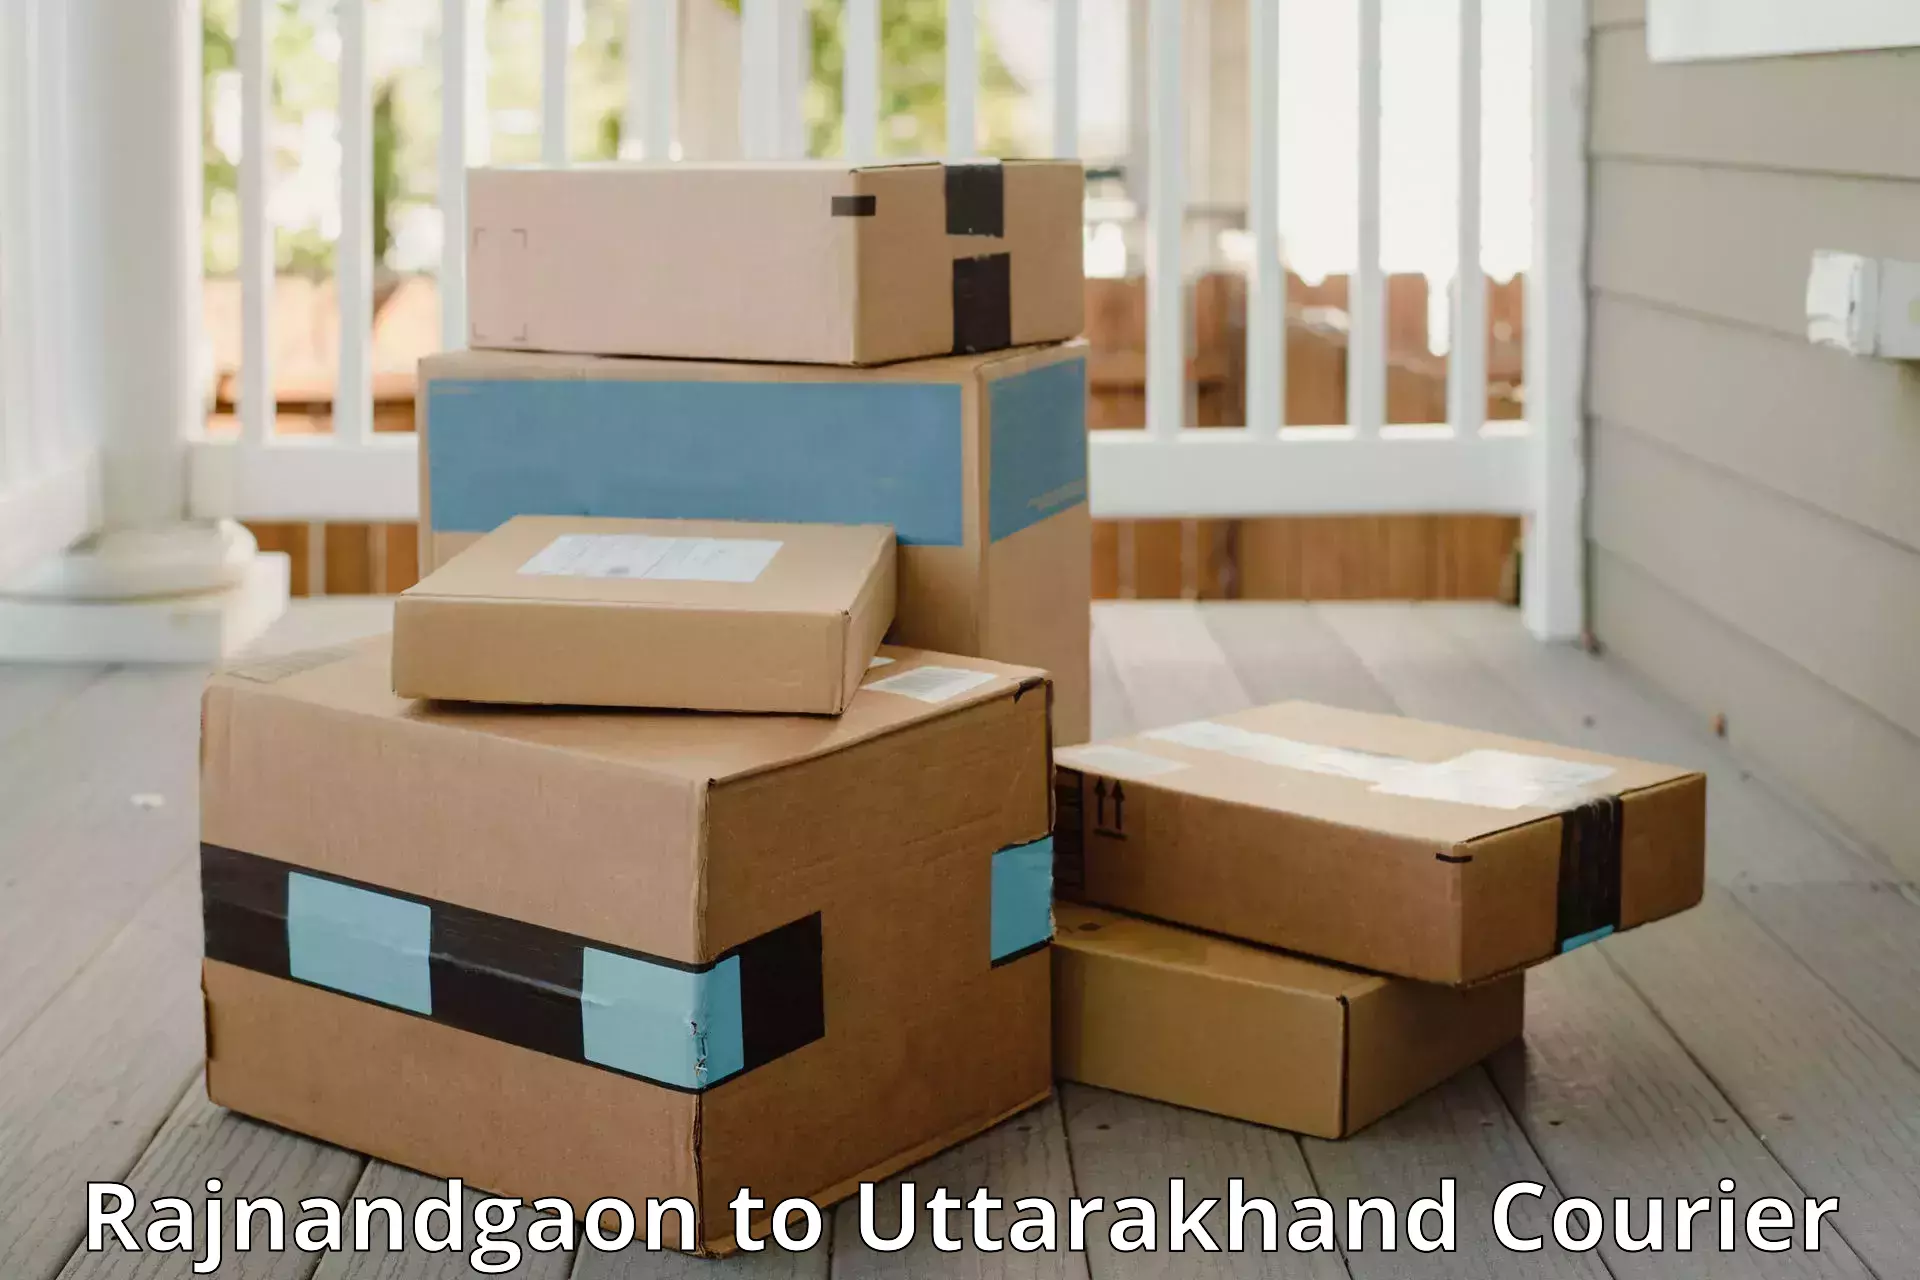 Luggage transfer service Rajnandgaon to Uttarakhand